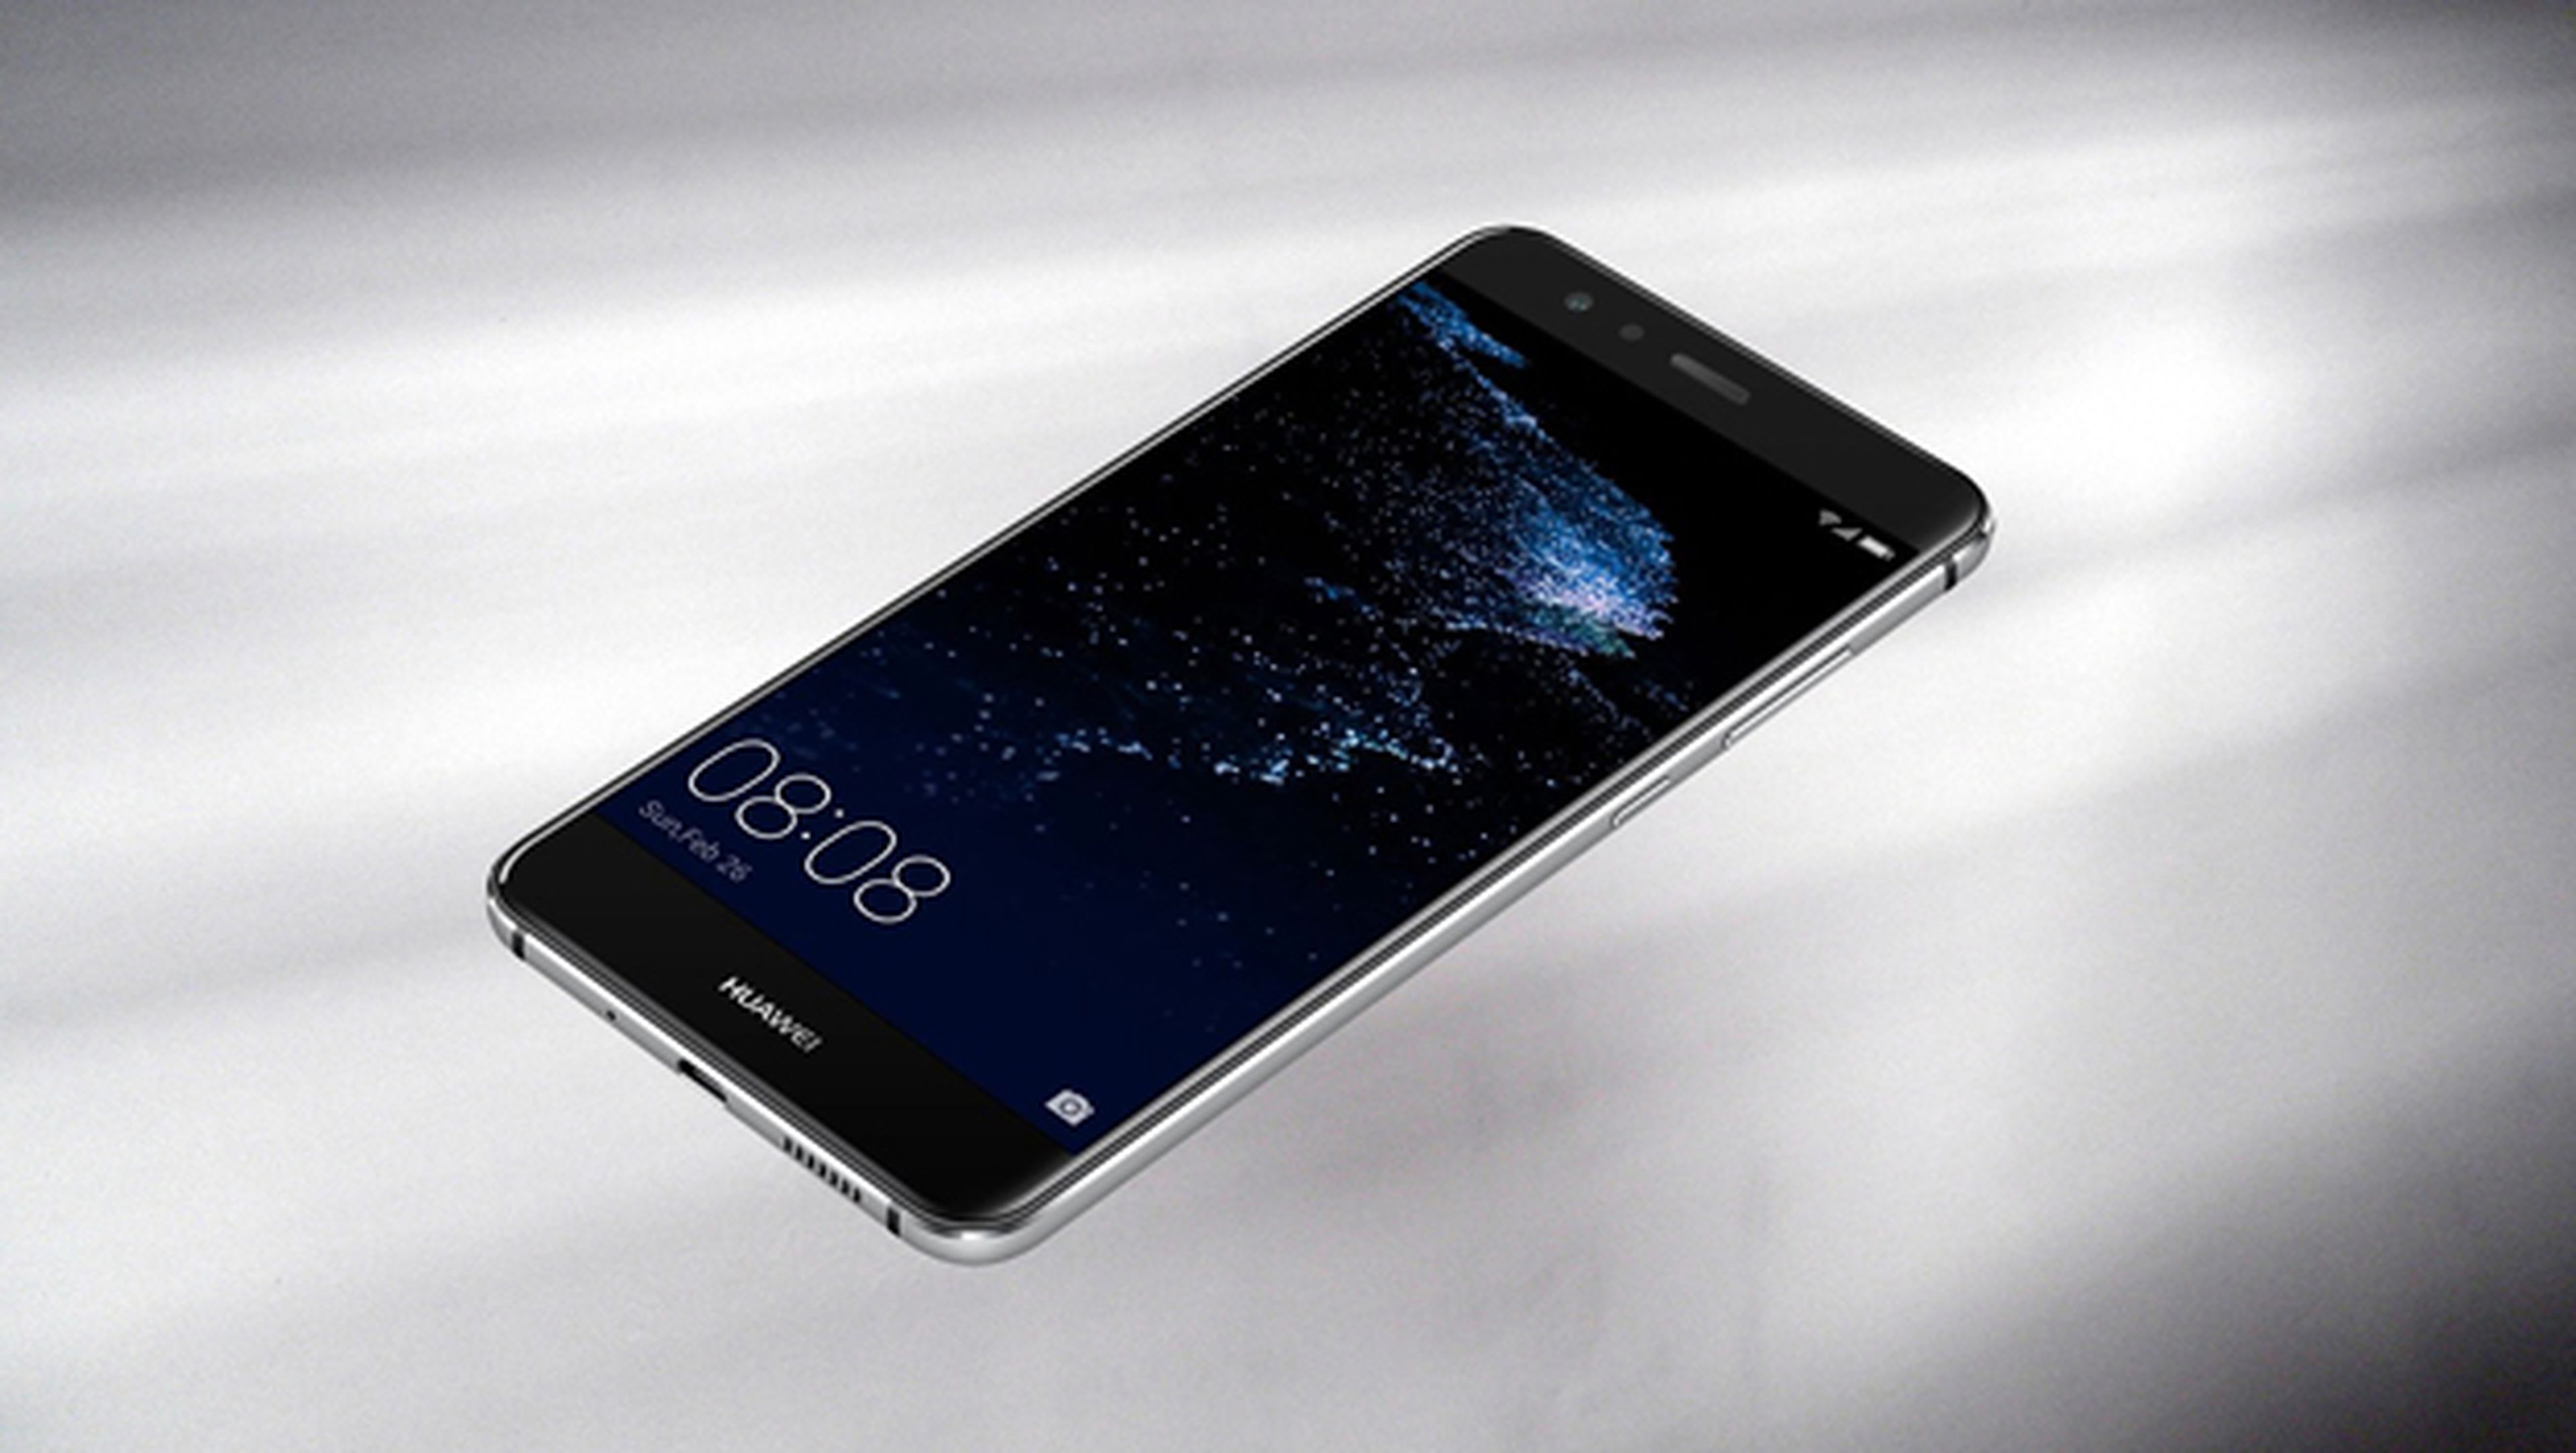 Nuevos detalles filtrados sobre el Huawei P10 Lite, el móvil barato de la compañía